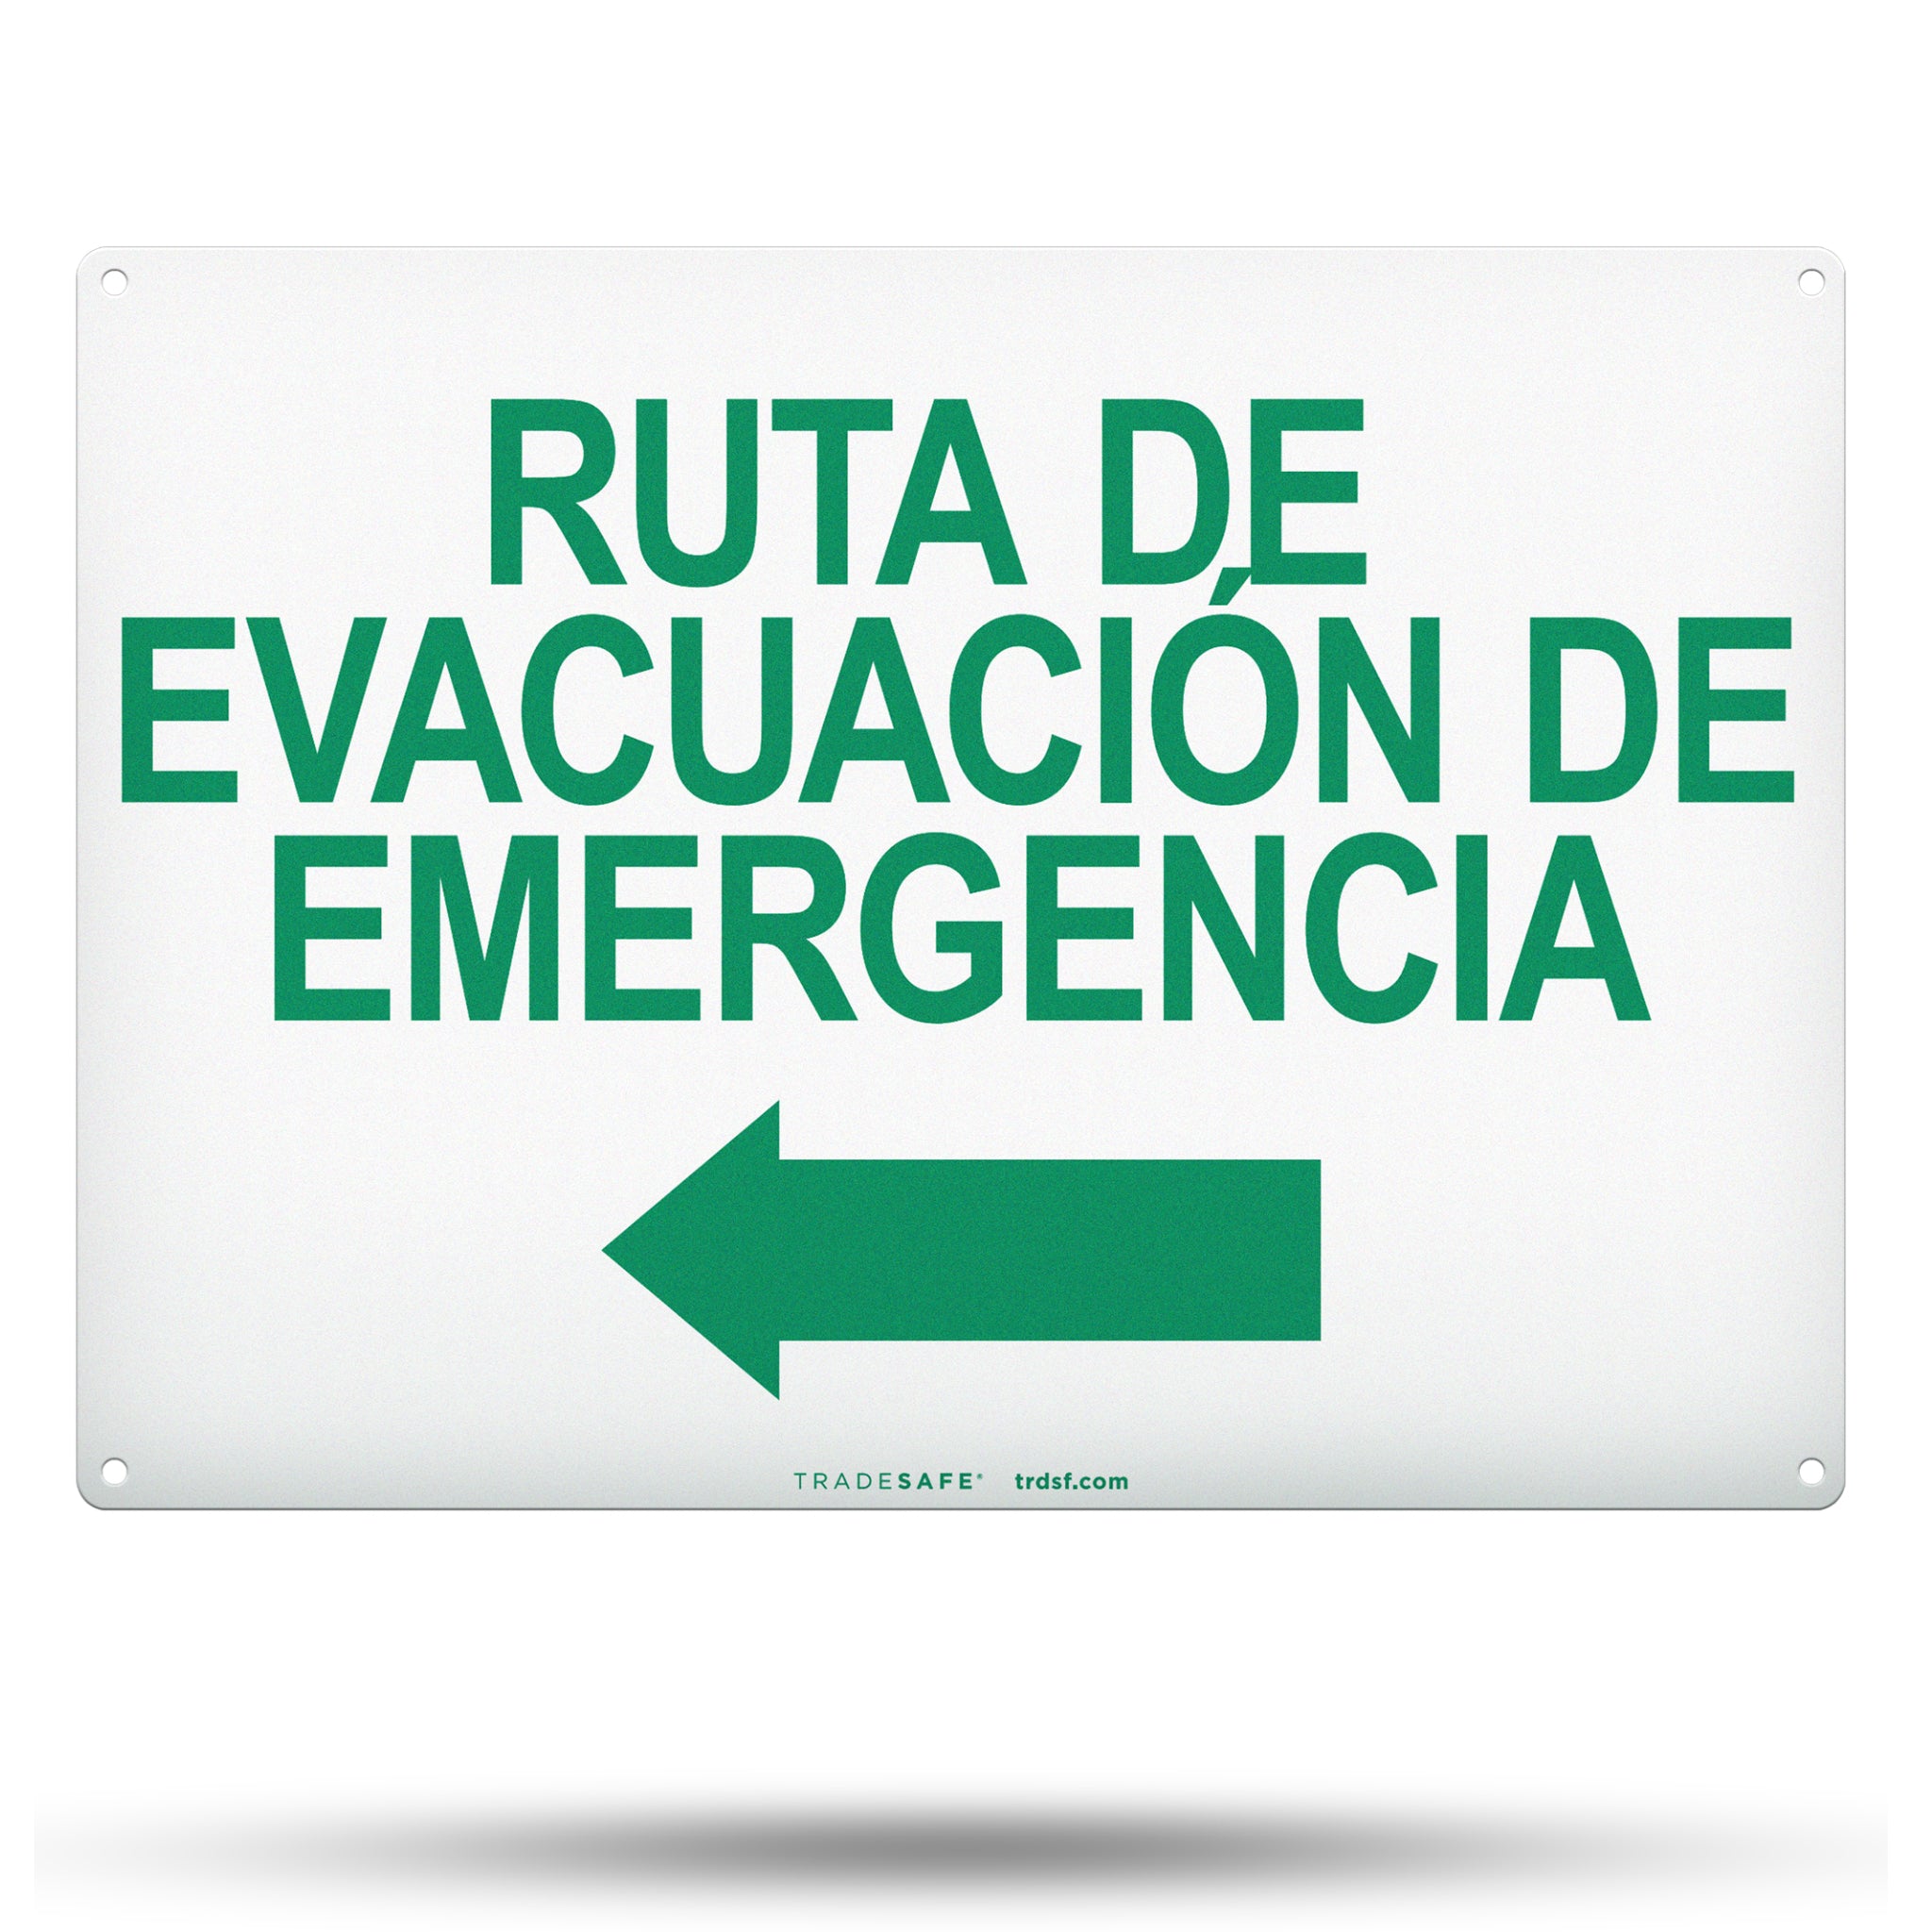 Ruta De Evacuación De Emergencia - Ruta De Evacuación De Emergencia (Flecha Izquierda) Letrero De Aluminio